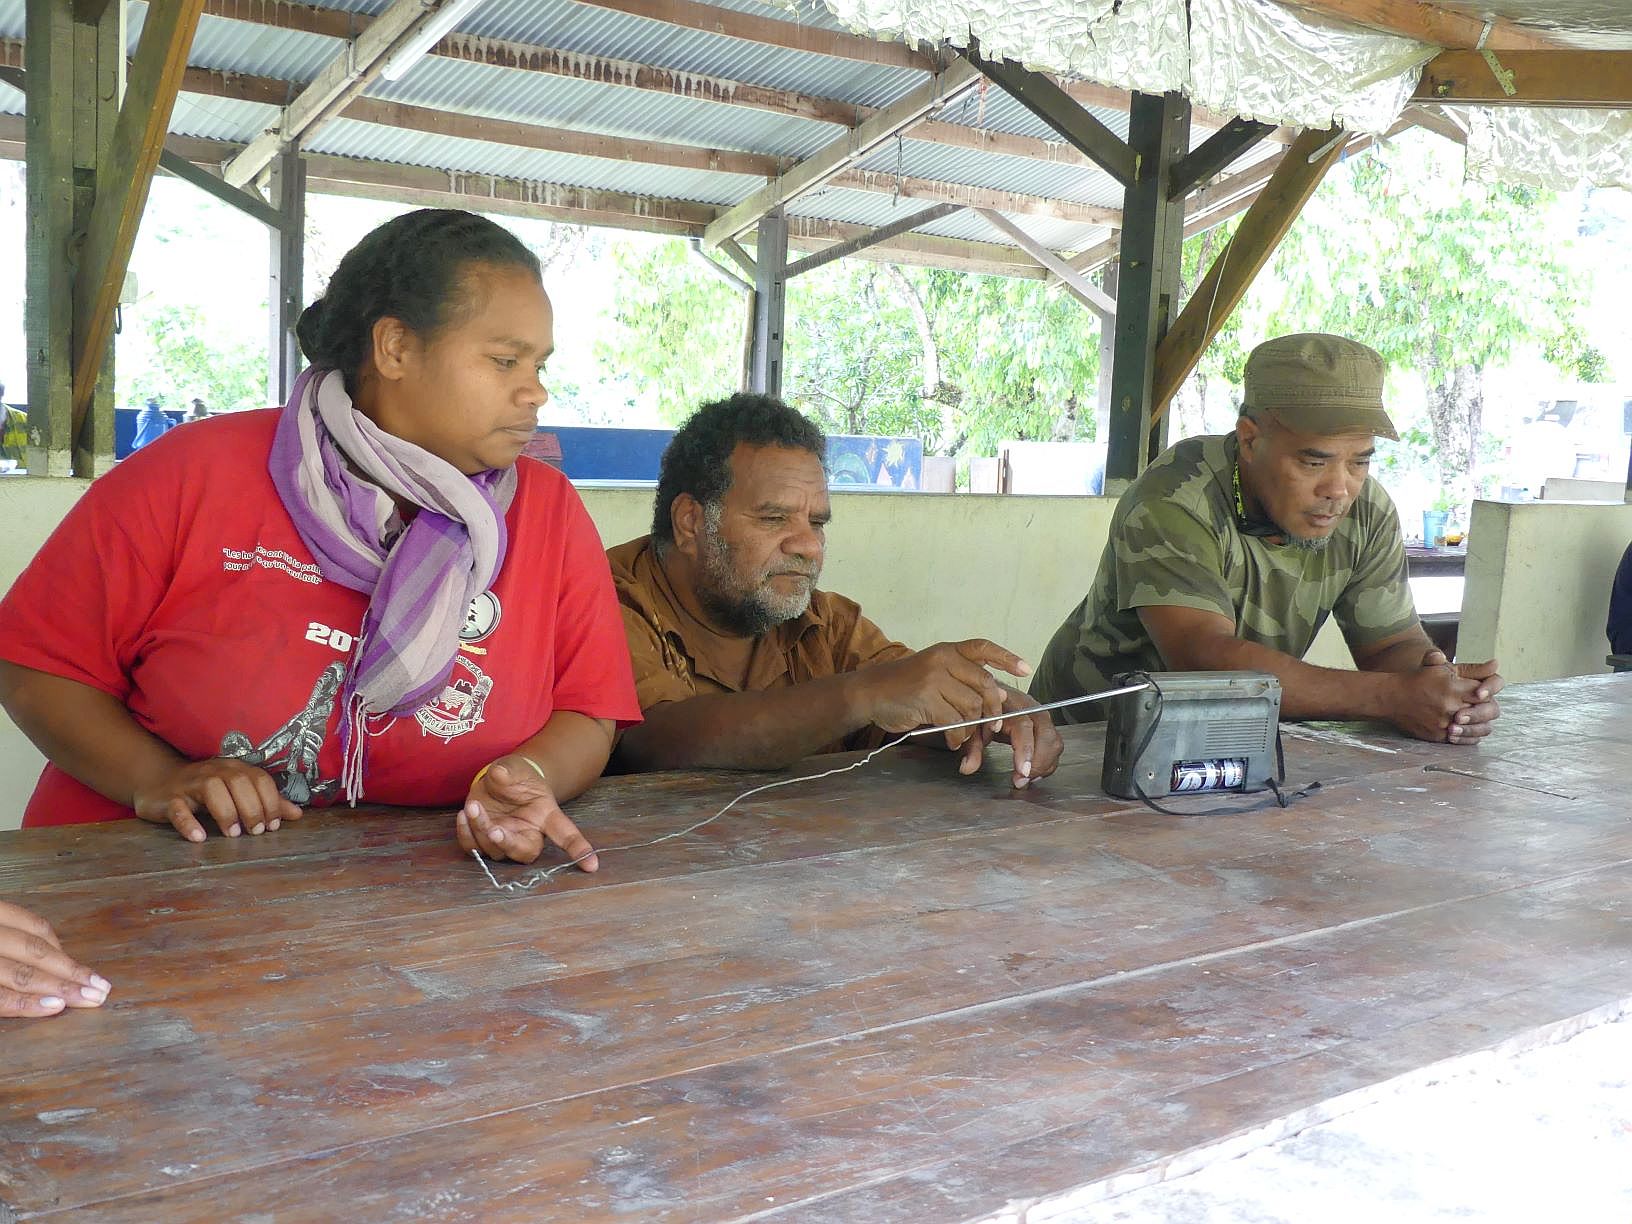 Dans les tribus de Hienghène, comme ici à Tiendanite, on a suivi la radio toute la journée dans l'espoir d'indication sur les résultats. « C'est un moment très important pour nous, signale Patrick Couhia (à droite). C'est le moment d'arrêter le colonialisme, de repartir ensemble sur des bases saines ».